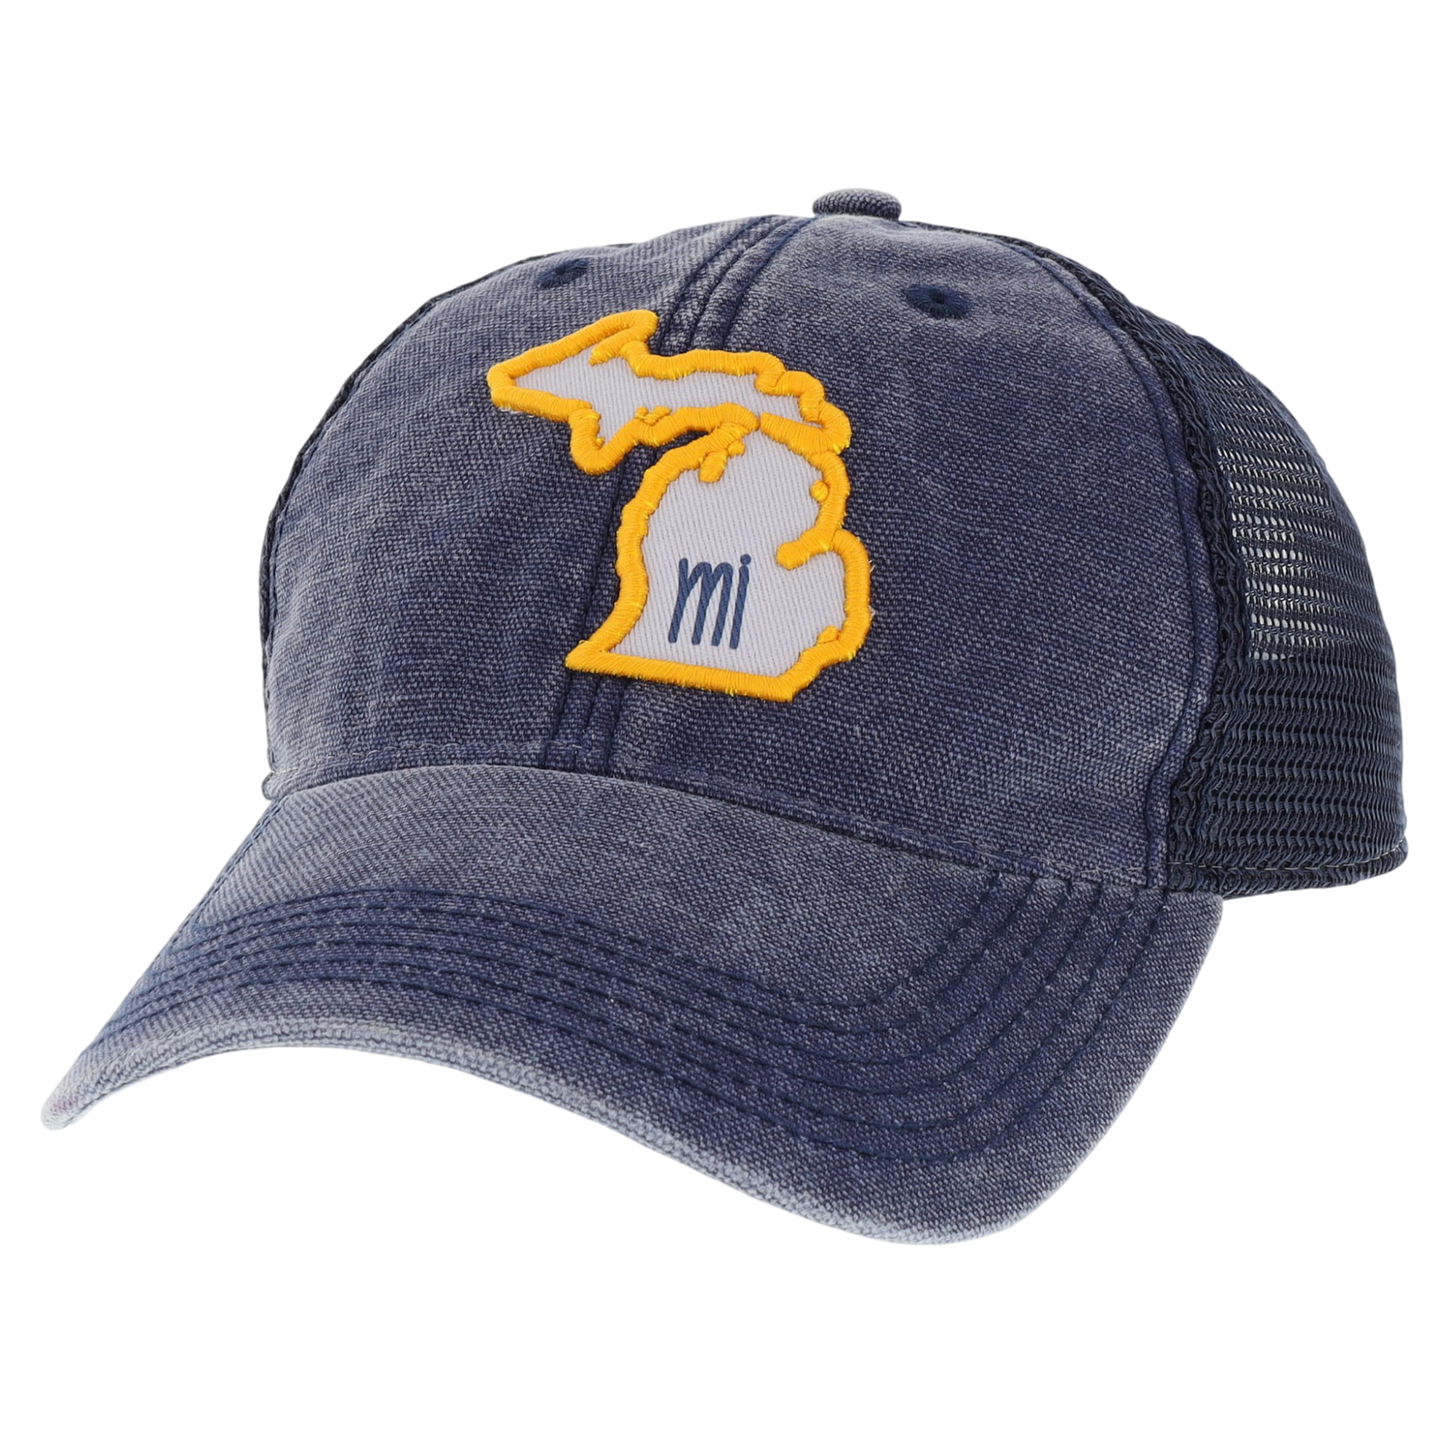 Michigan Dashboard Trucker Hat in Navy/Navy